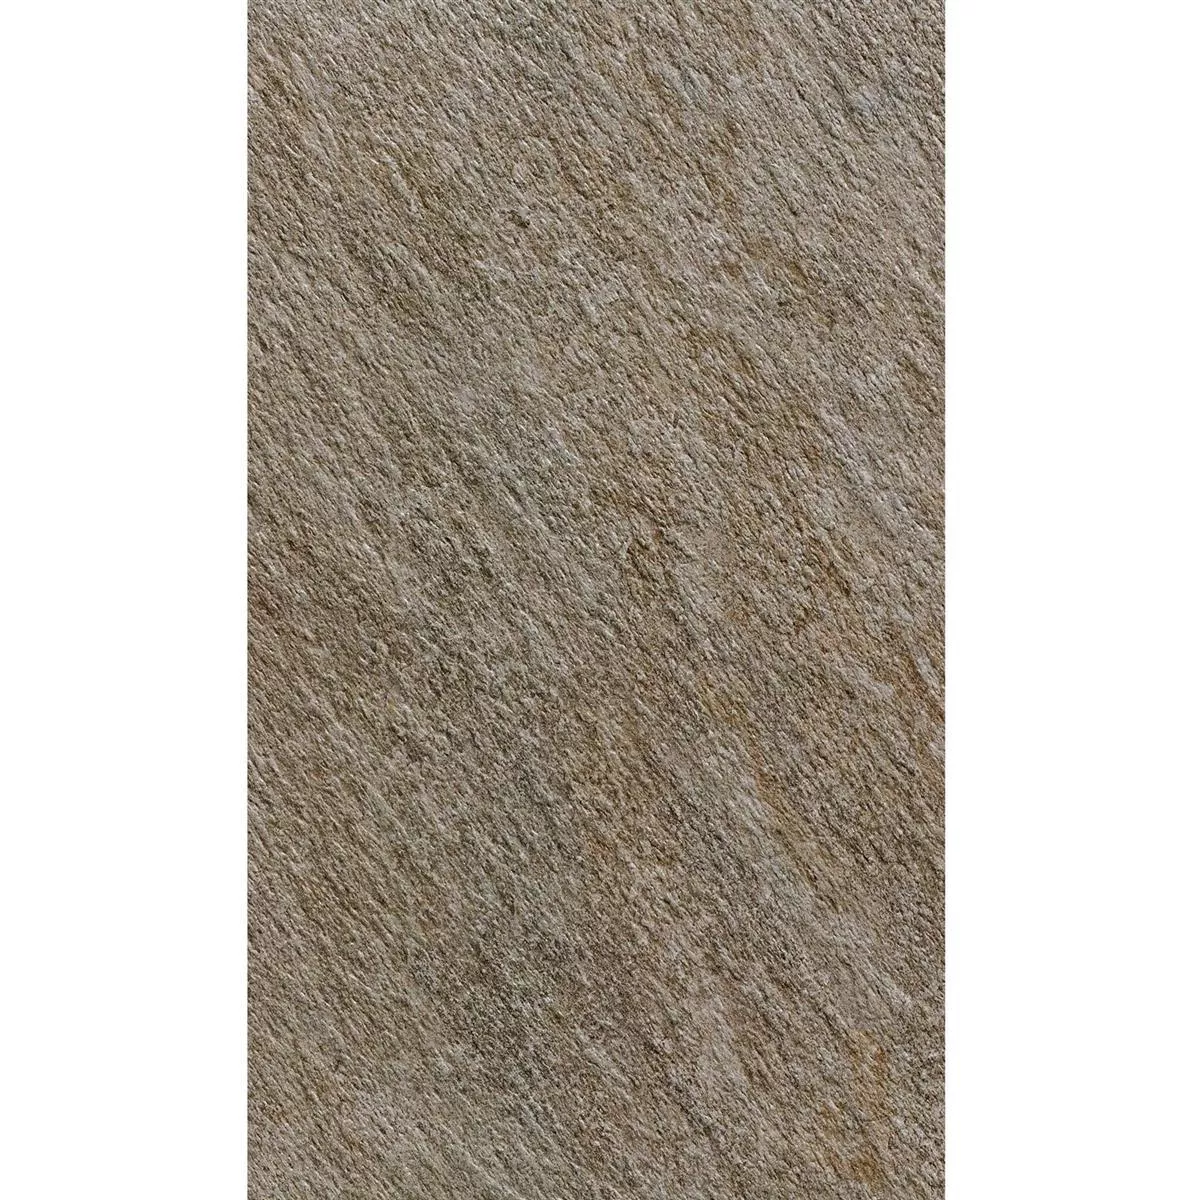 Sample Terrastegels Stoneway Natuursteen Optiek Donkergrijs 60x90cm